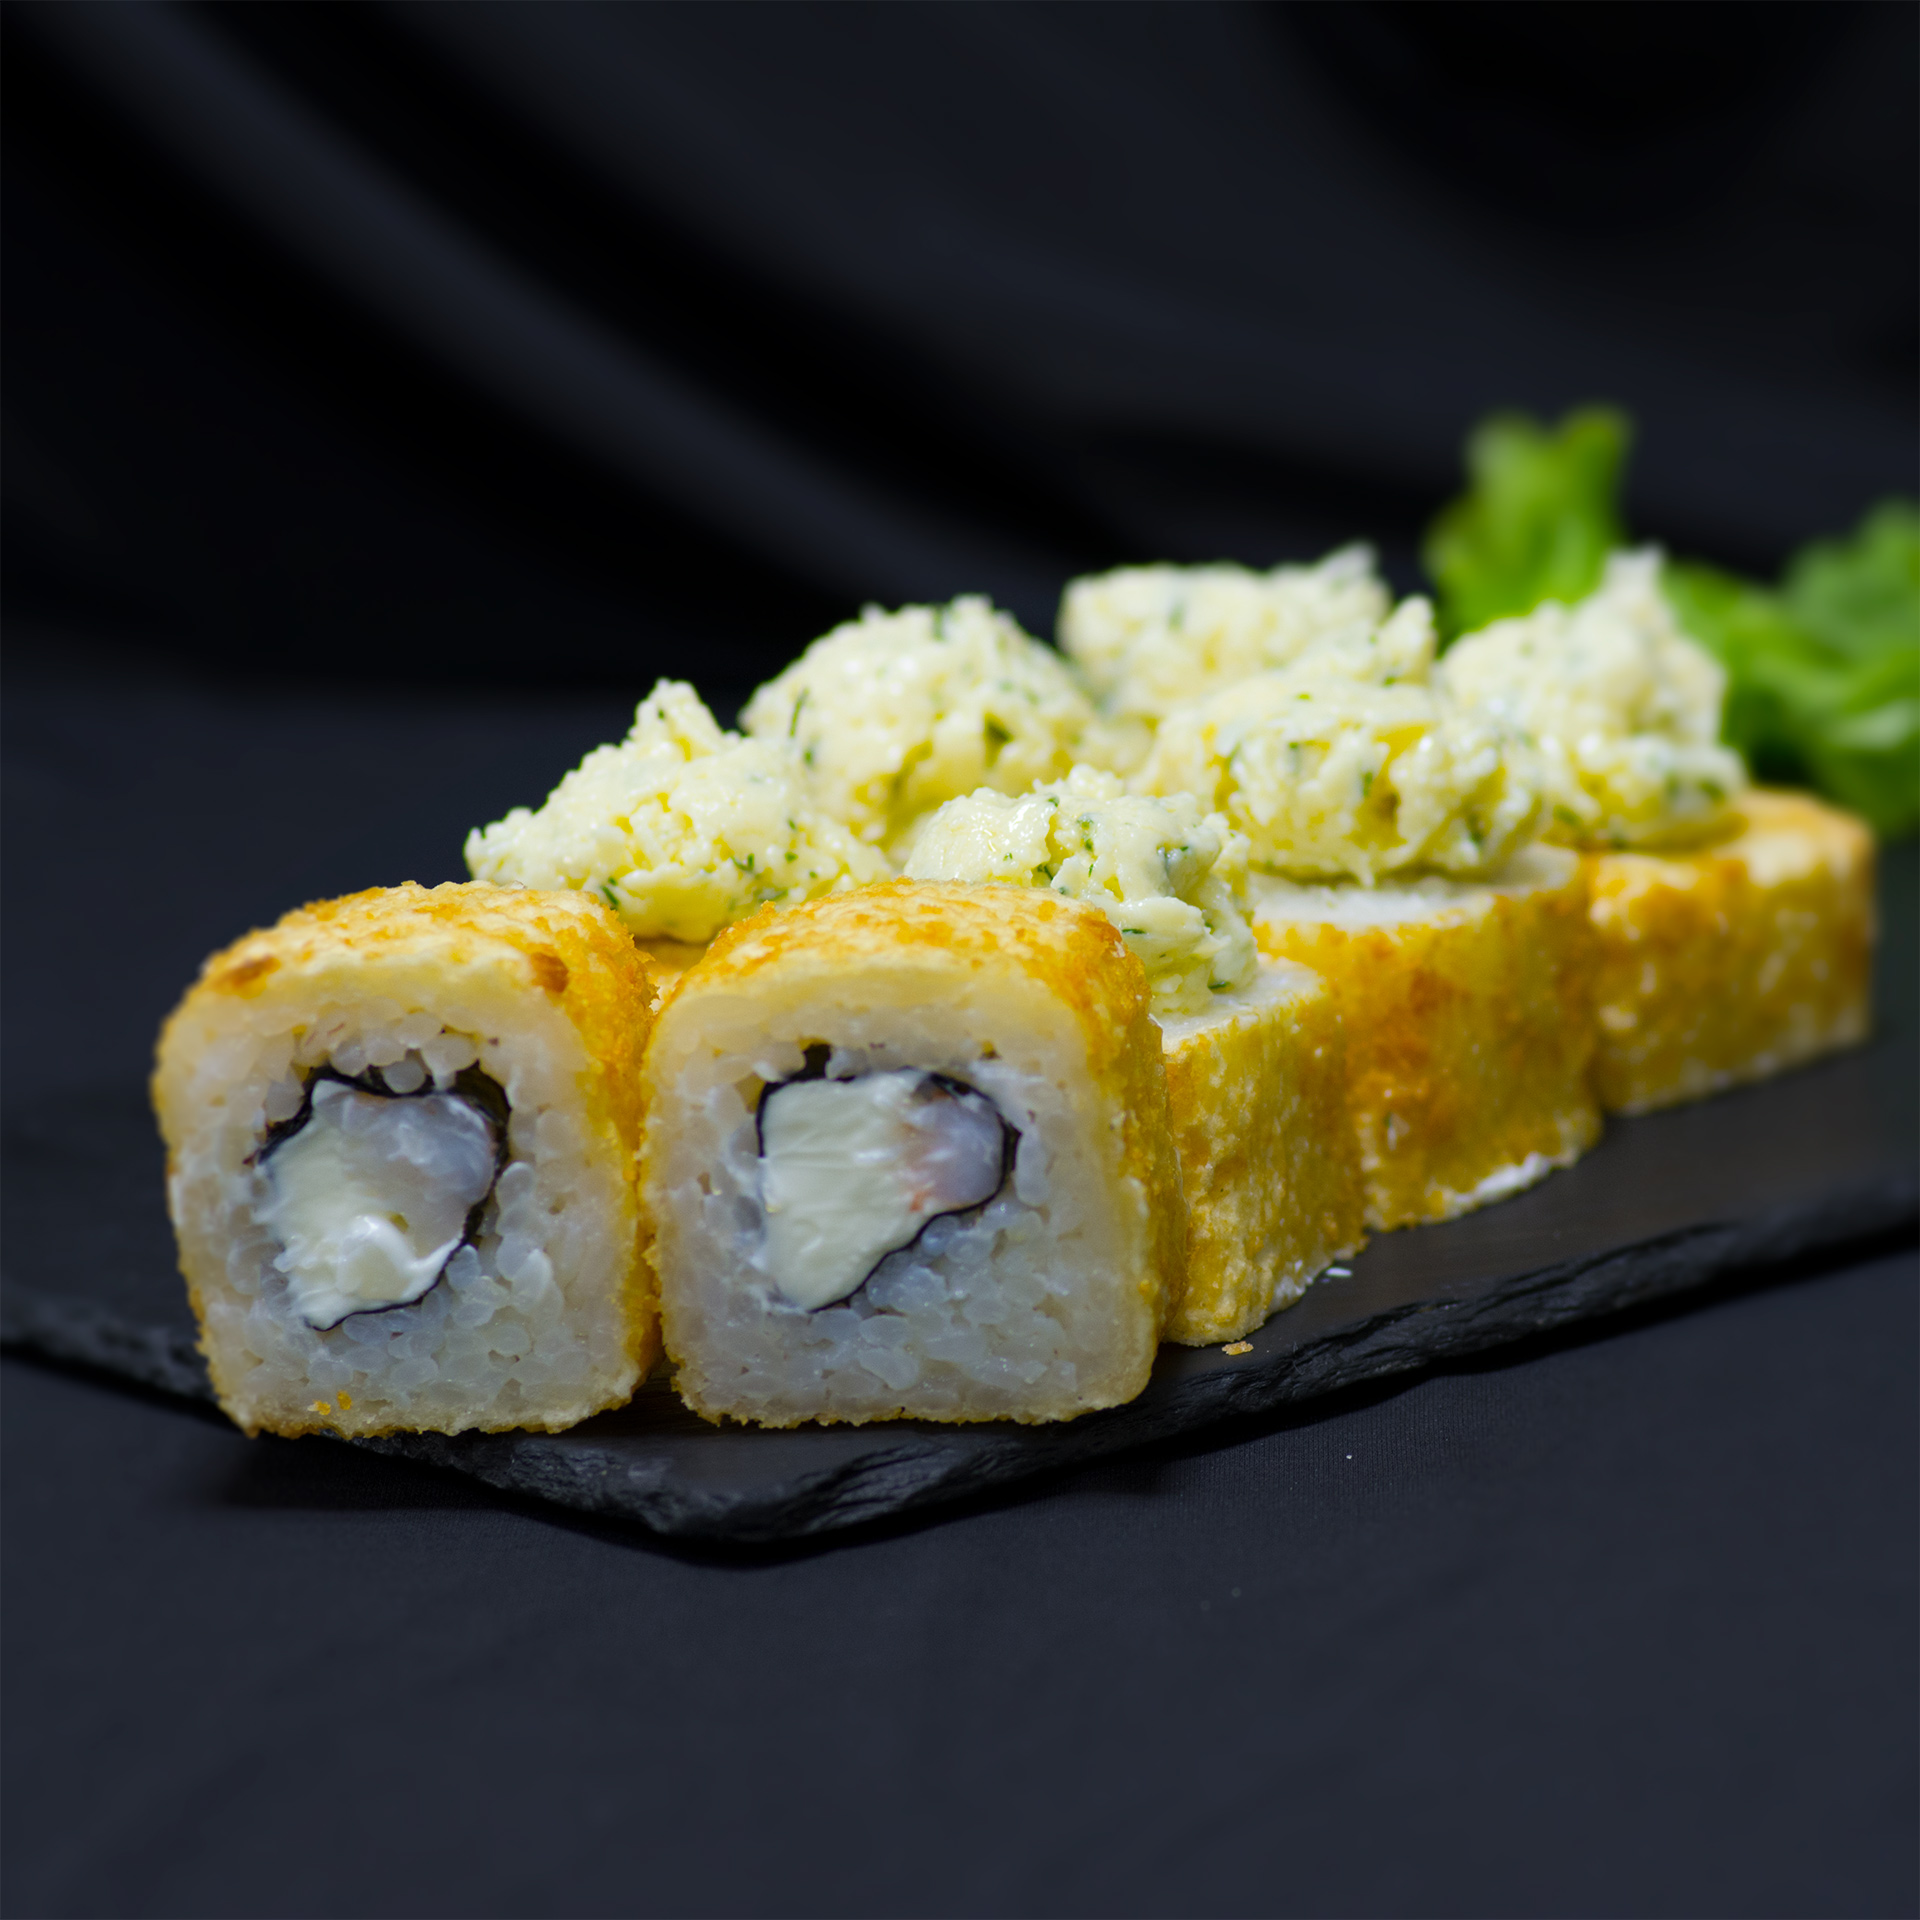 Заказать суши в краснодаре с бесплатной доставкой тануки фото 64